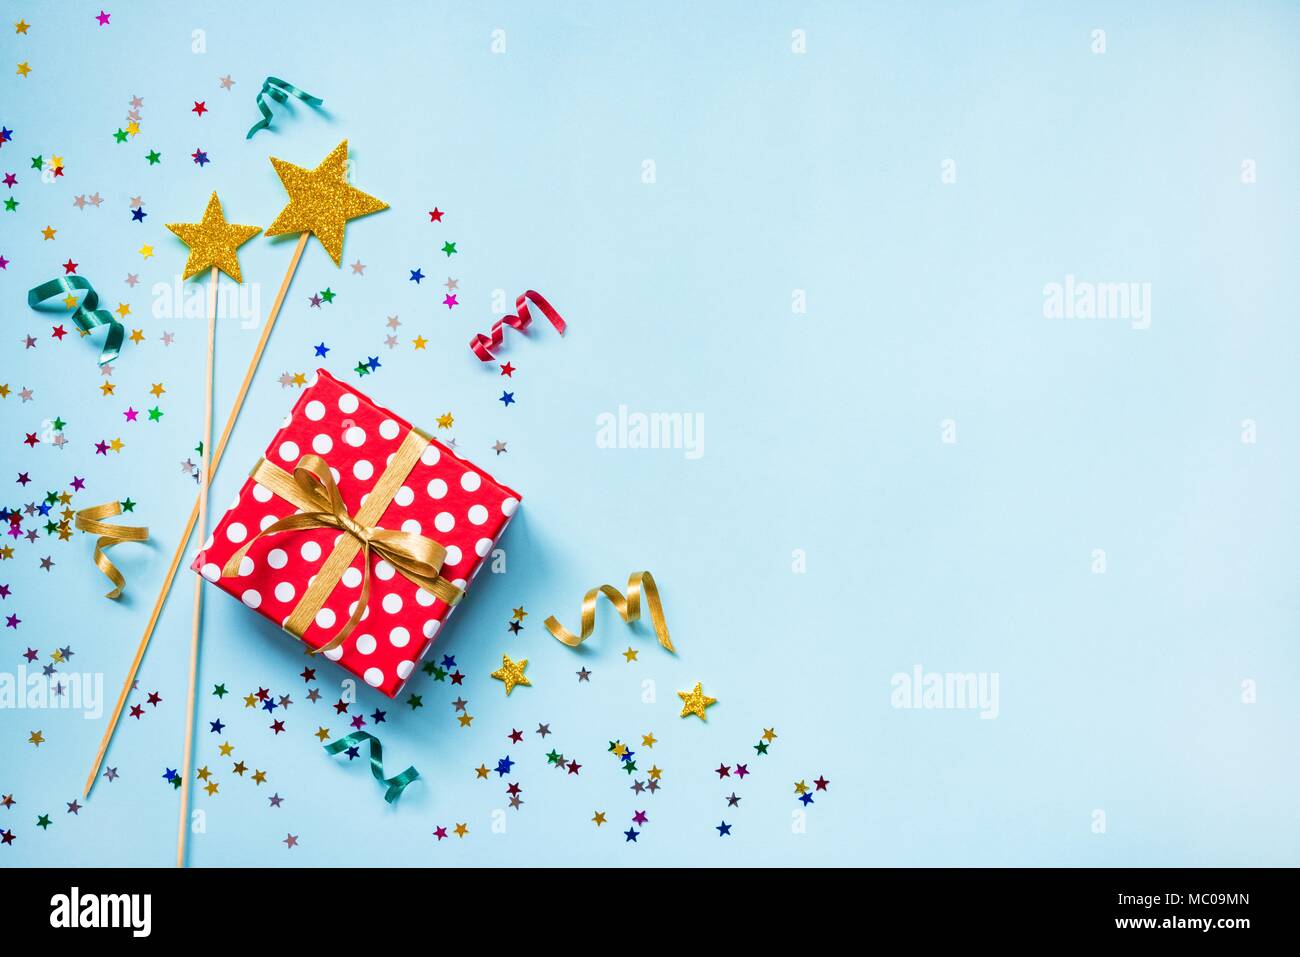 Vue de dessus d'une boîte cadeau rouge en pointillés, golden baguettes magiques, confetti colorés et rubans sur fond bleu. Concept de célébration. Copier l'espace. Banque D'Images